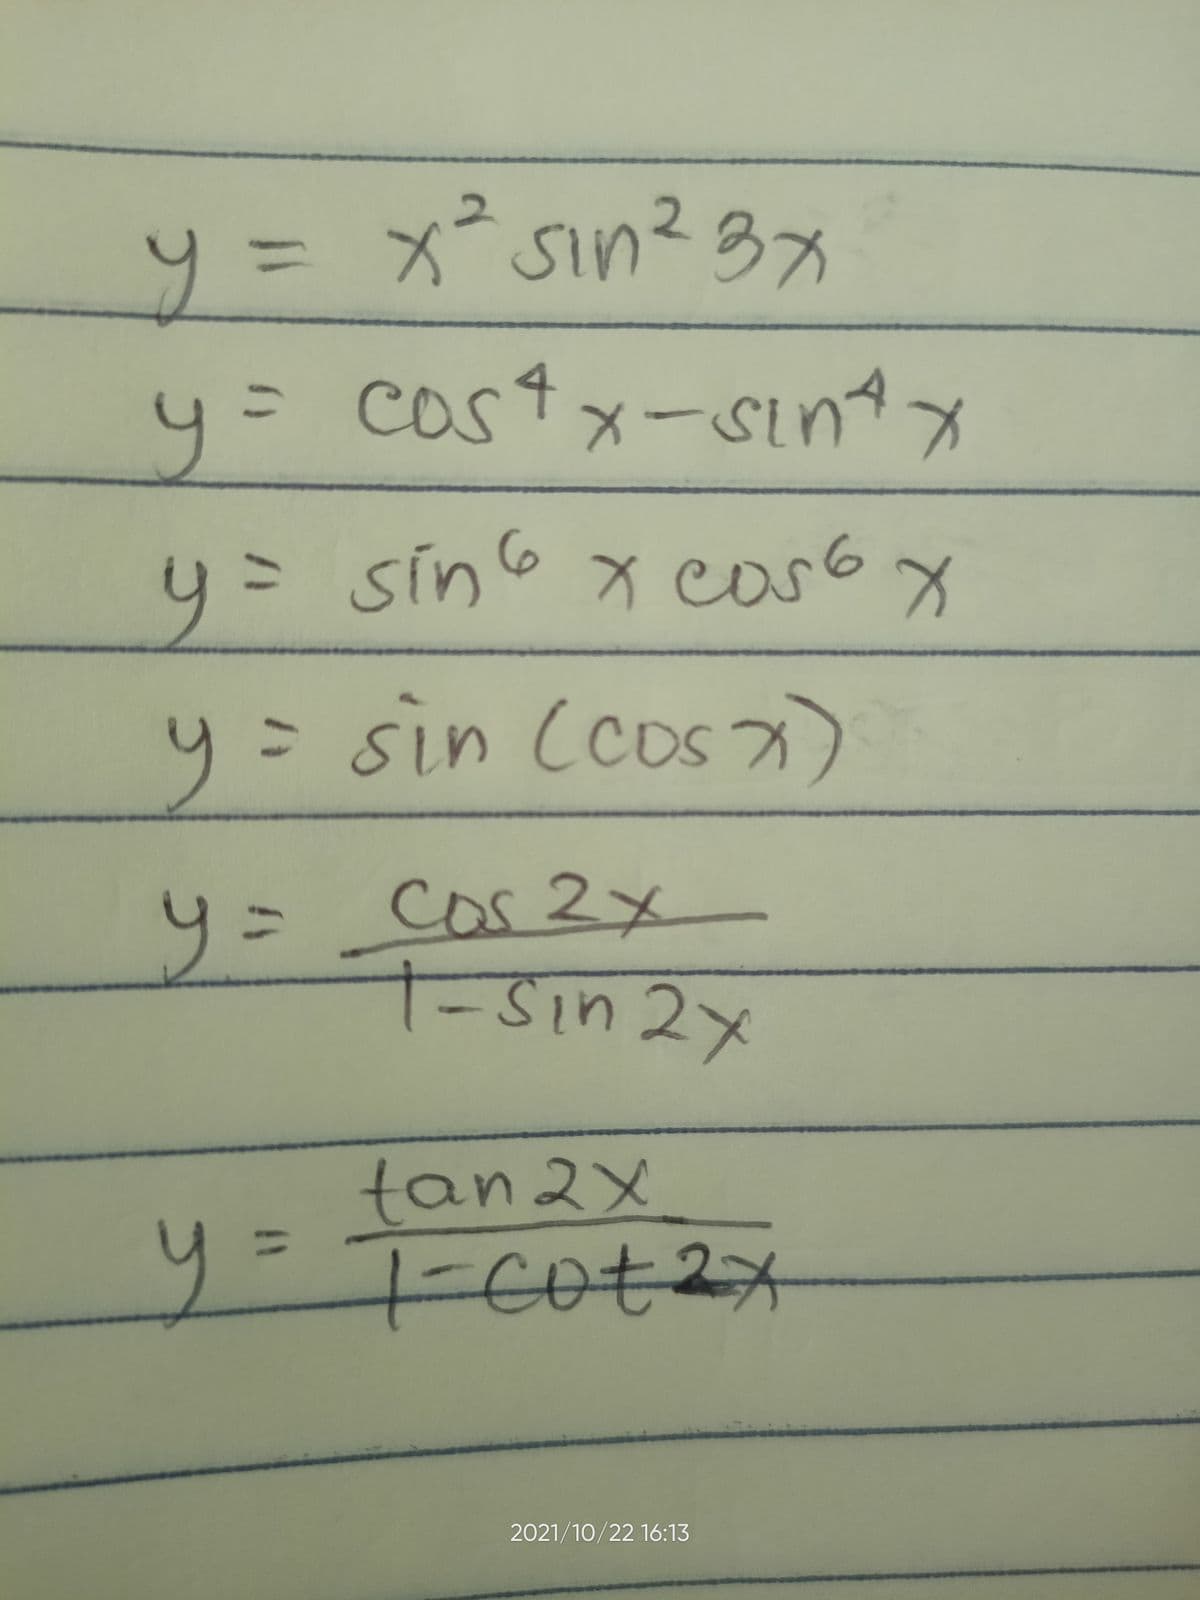 y = x sin? 3x
y= costx-sıntx
y= sino x casox
り
6.
y= sin (cos
COS7
リニ
cas2x
7-Sin 2x
tan2x
-cot2x
2021/10/22 16:13
